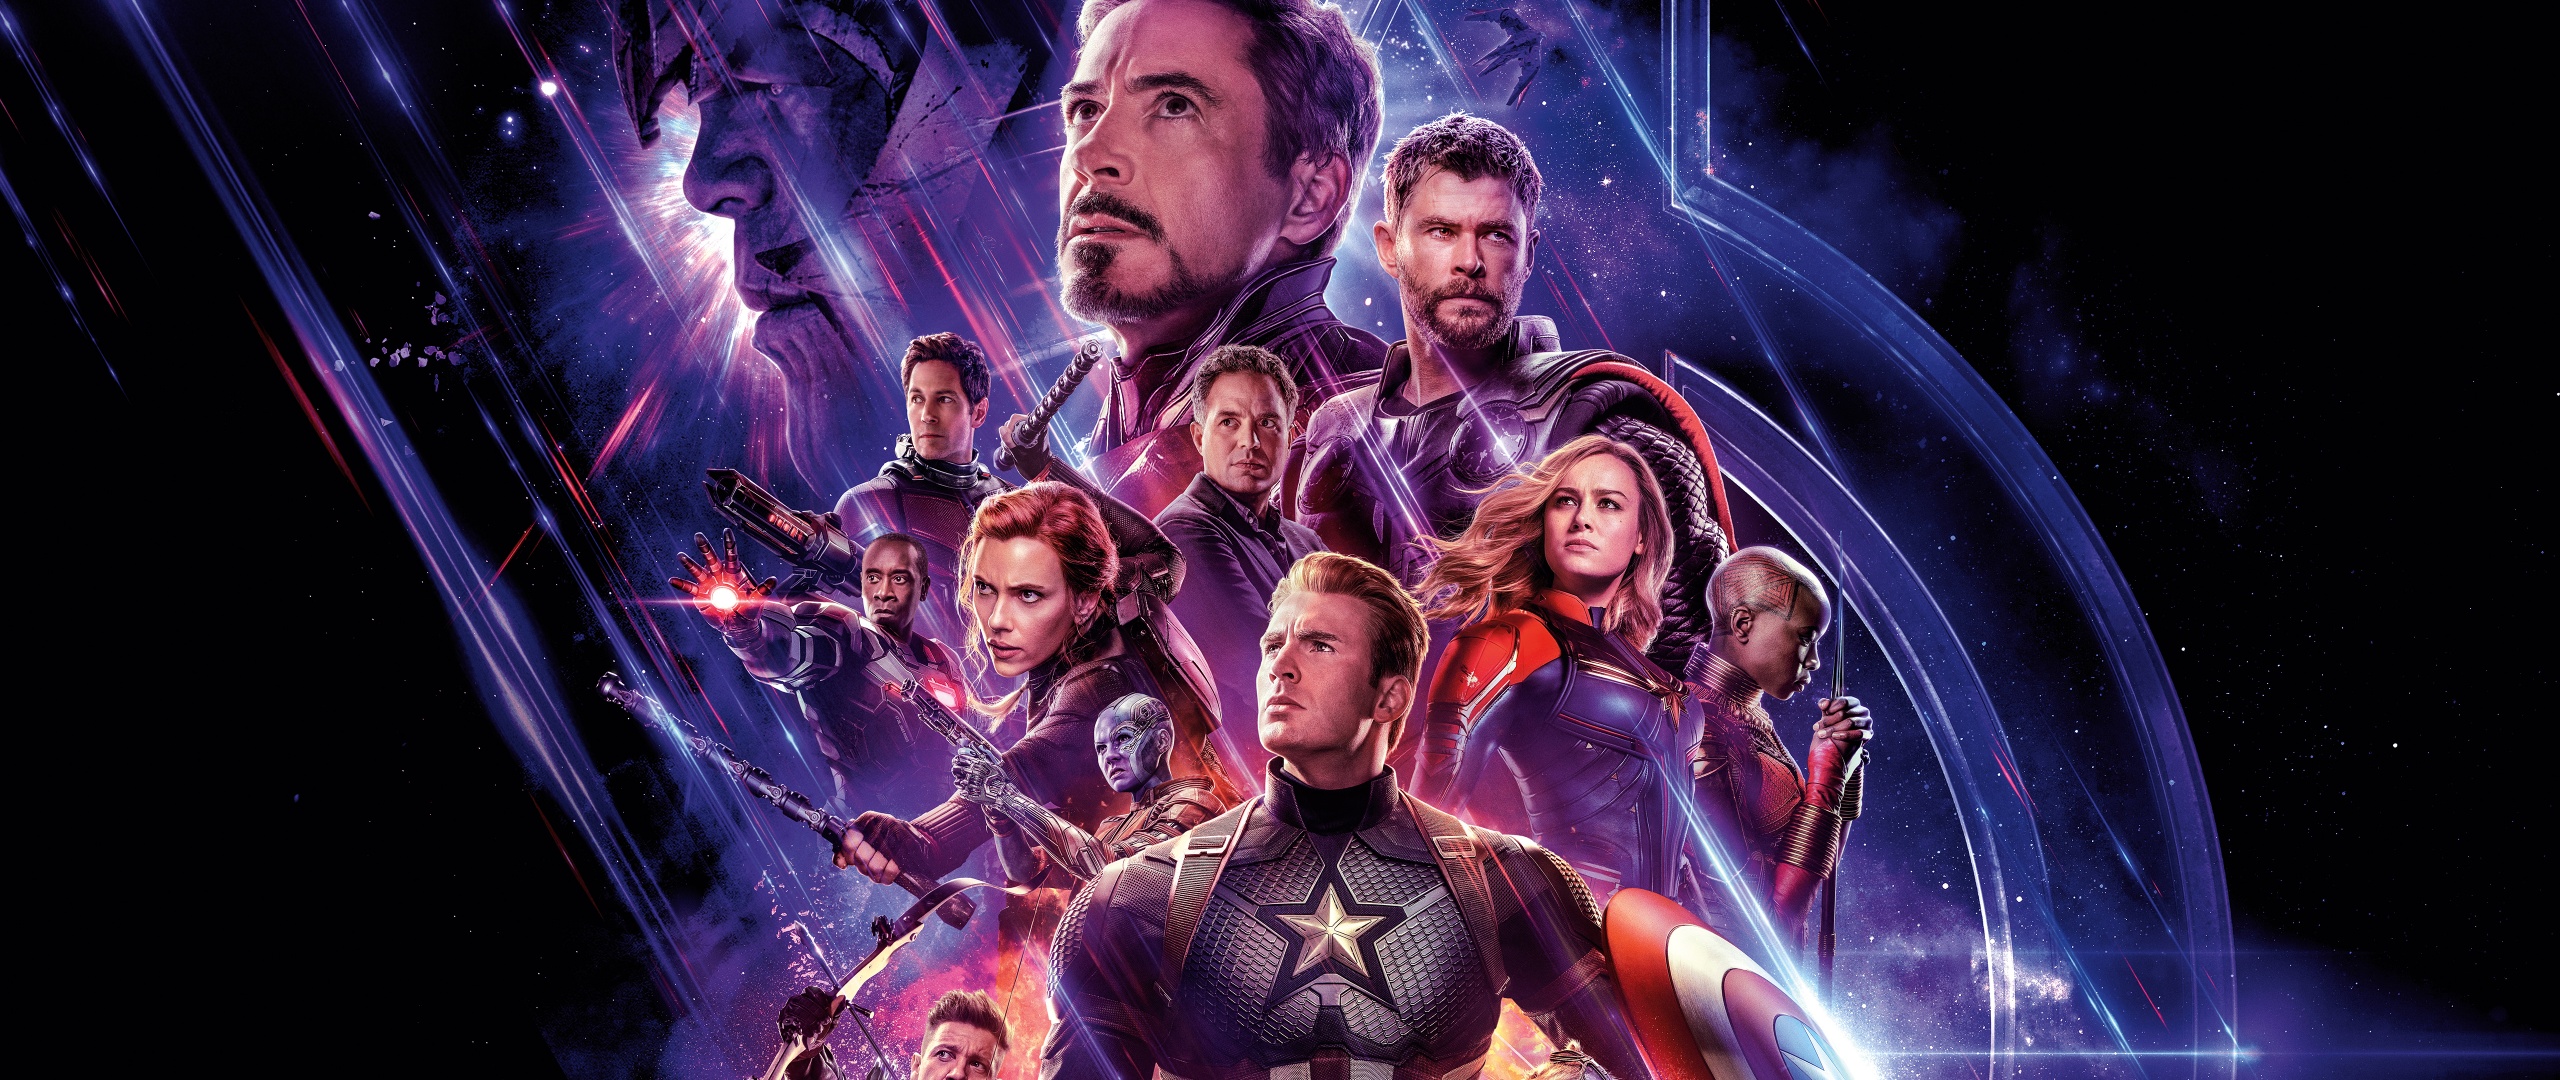 Avengers: Endgame Wallpaper 4K, Marvel Superheroes, Movies, #942